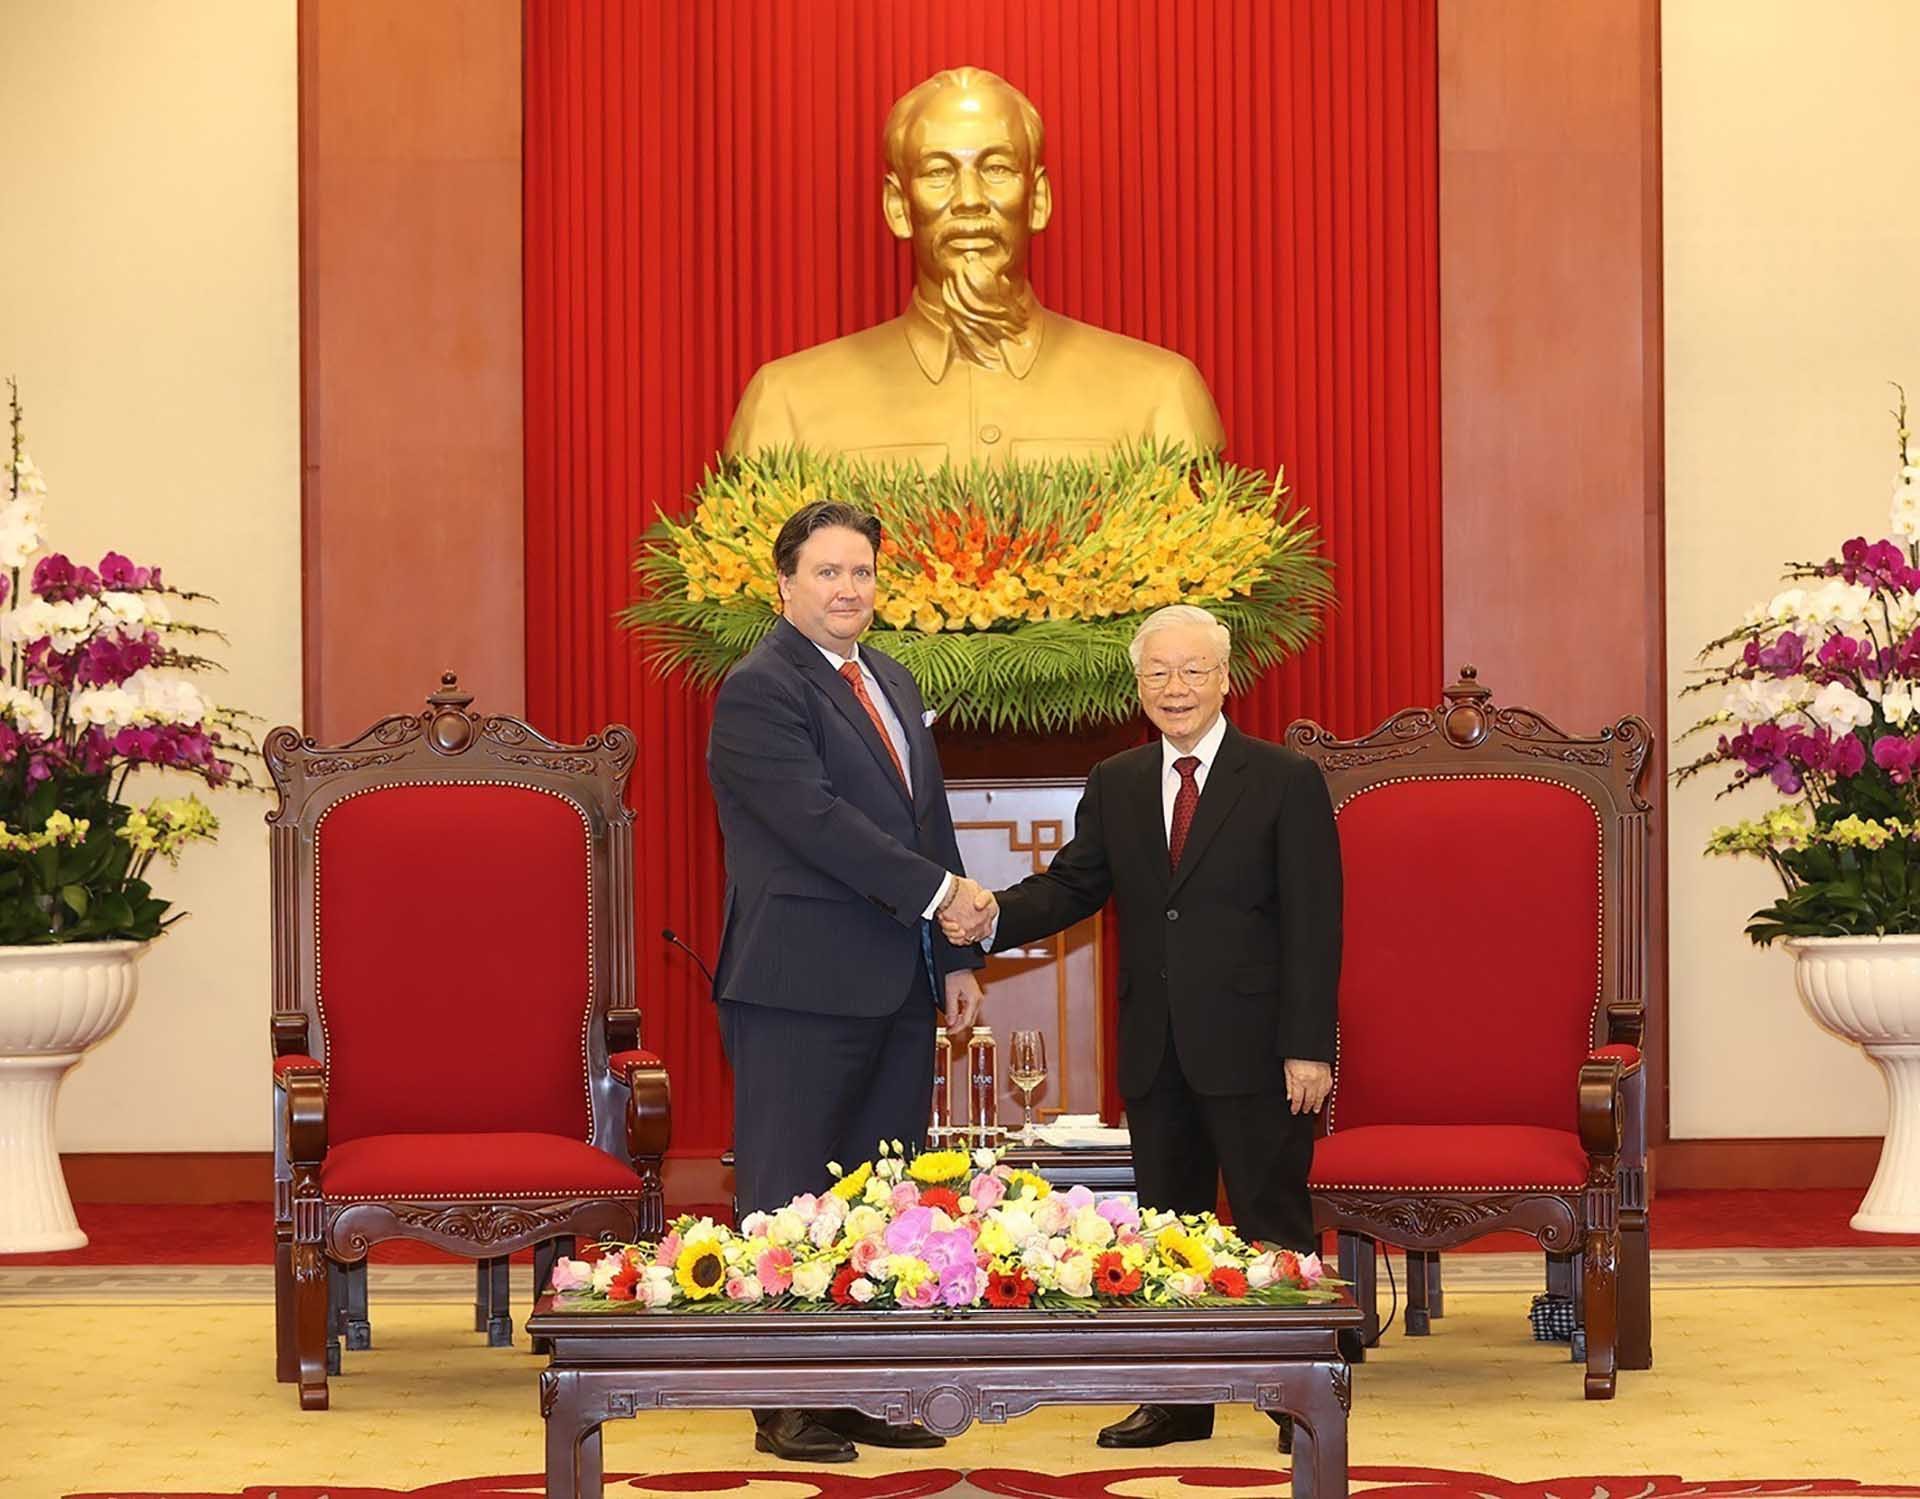 Tổng Bí thư Nguyễn Phú Trọng tiếp Đại sứ Hoa Kỳ Marc E. Knapper đến chào xã giao nhân dịp bắt đầu nhiệm kỳ công tác tại Việt Nam. (Nguồn: TTXVN)